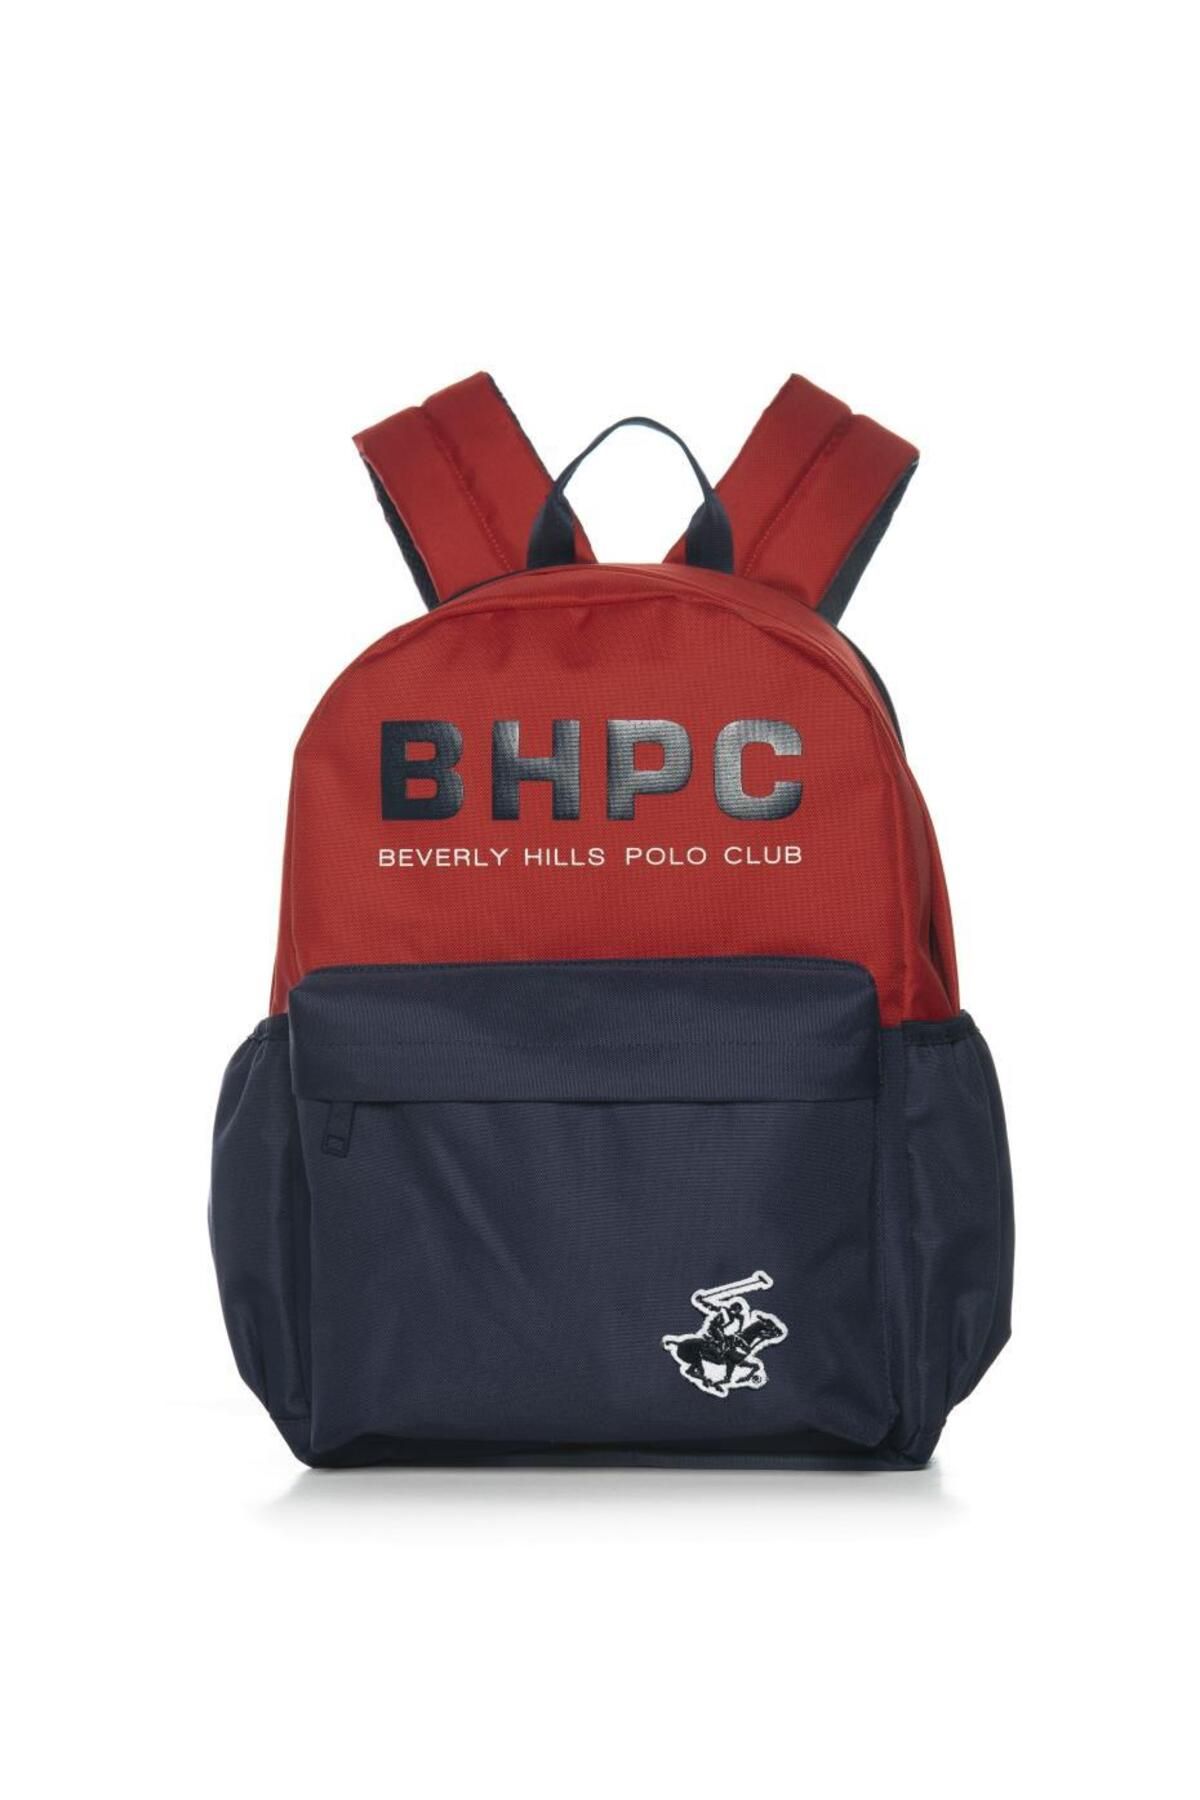 Beverly Hills Polo Club Beverely Hills Polo Club Sırt Çantası Kırmızı Lacivert